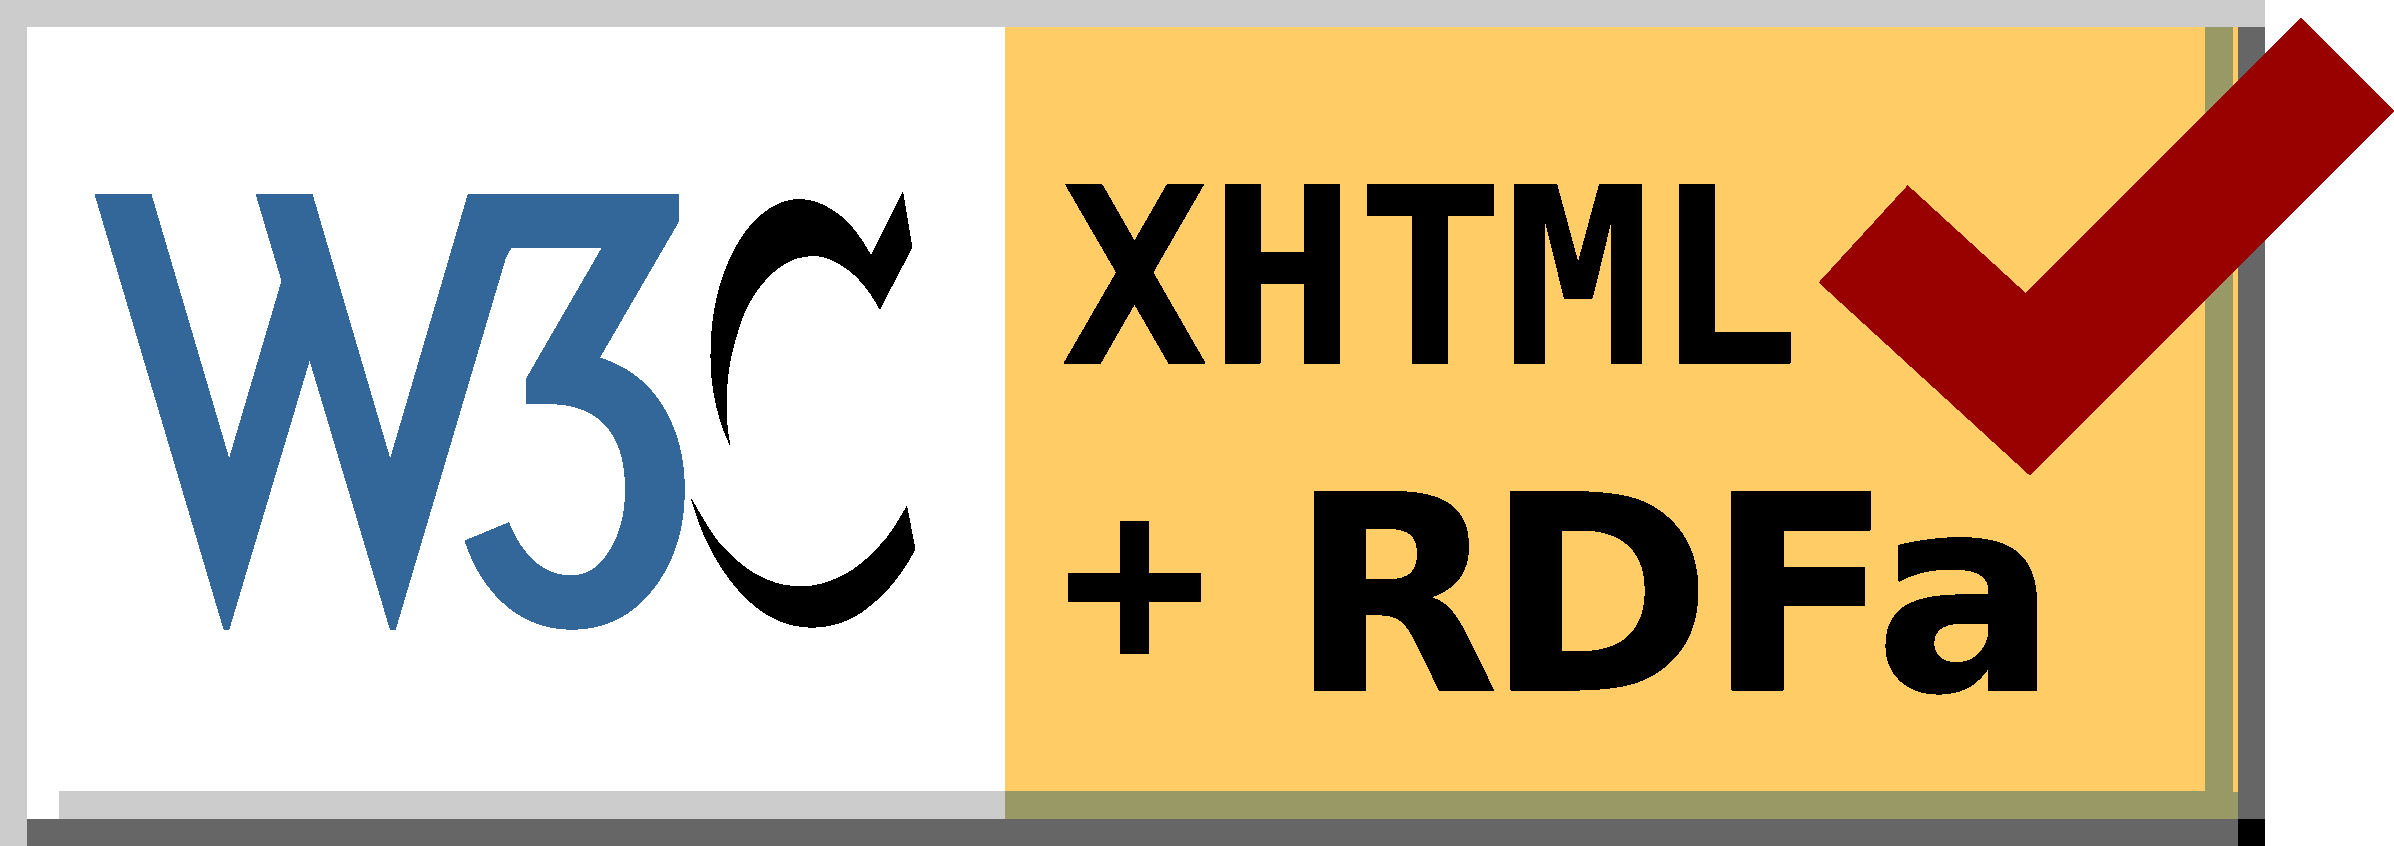 Valid XHTML+RDFa 1.1